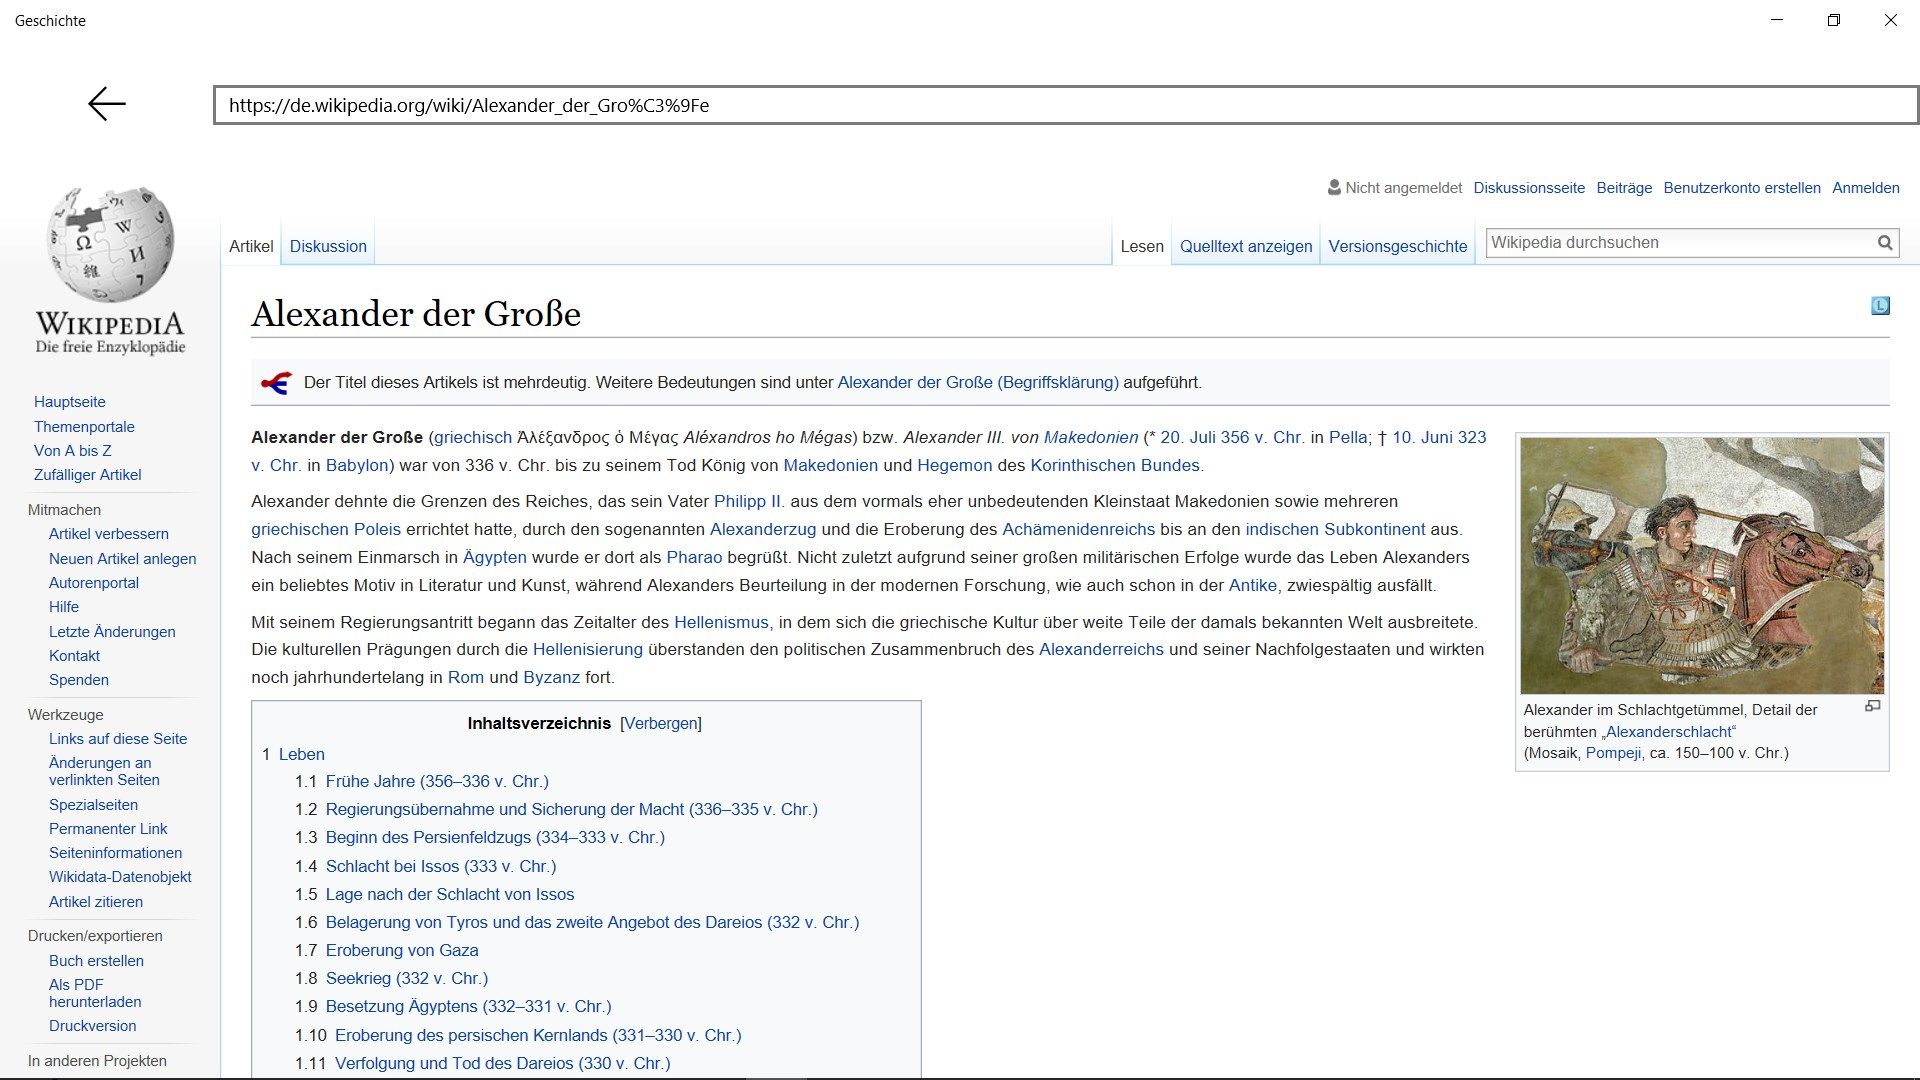 Wikipedia-Artikel für jedes Ereignis